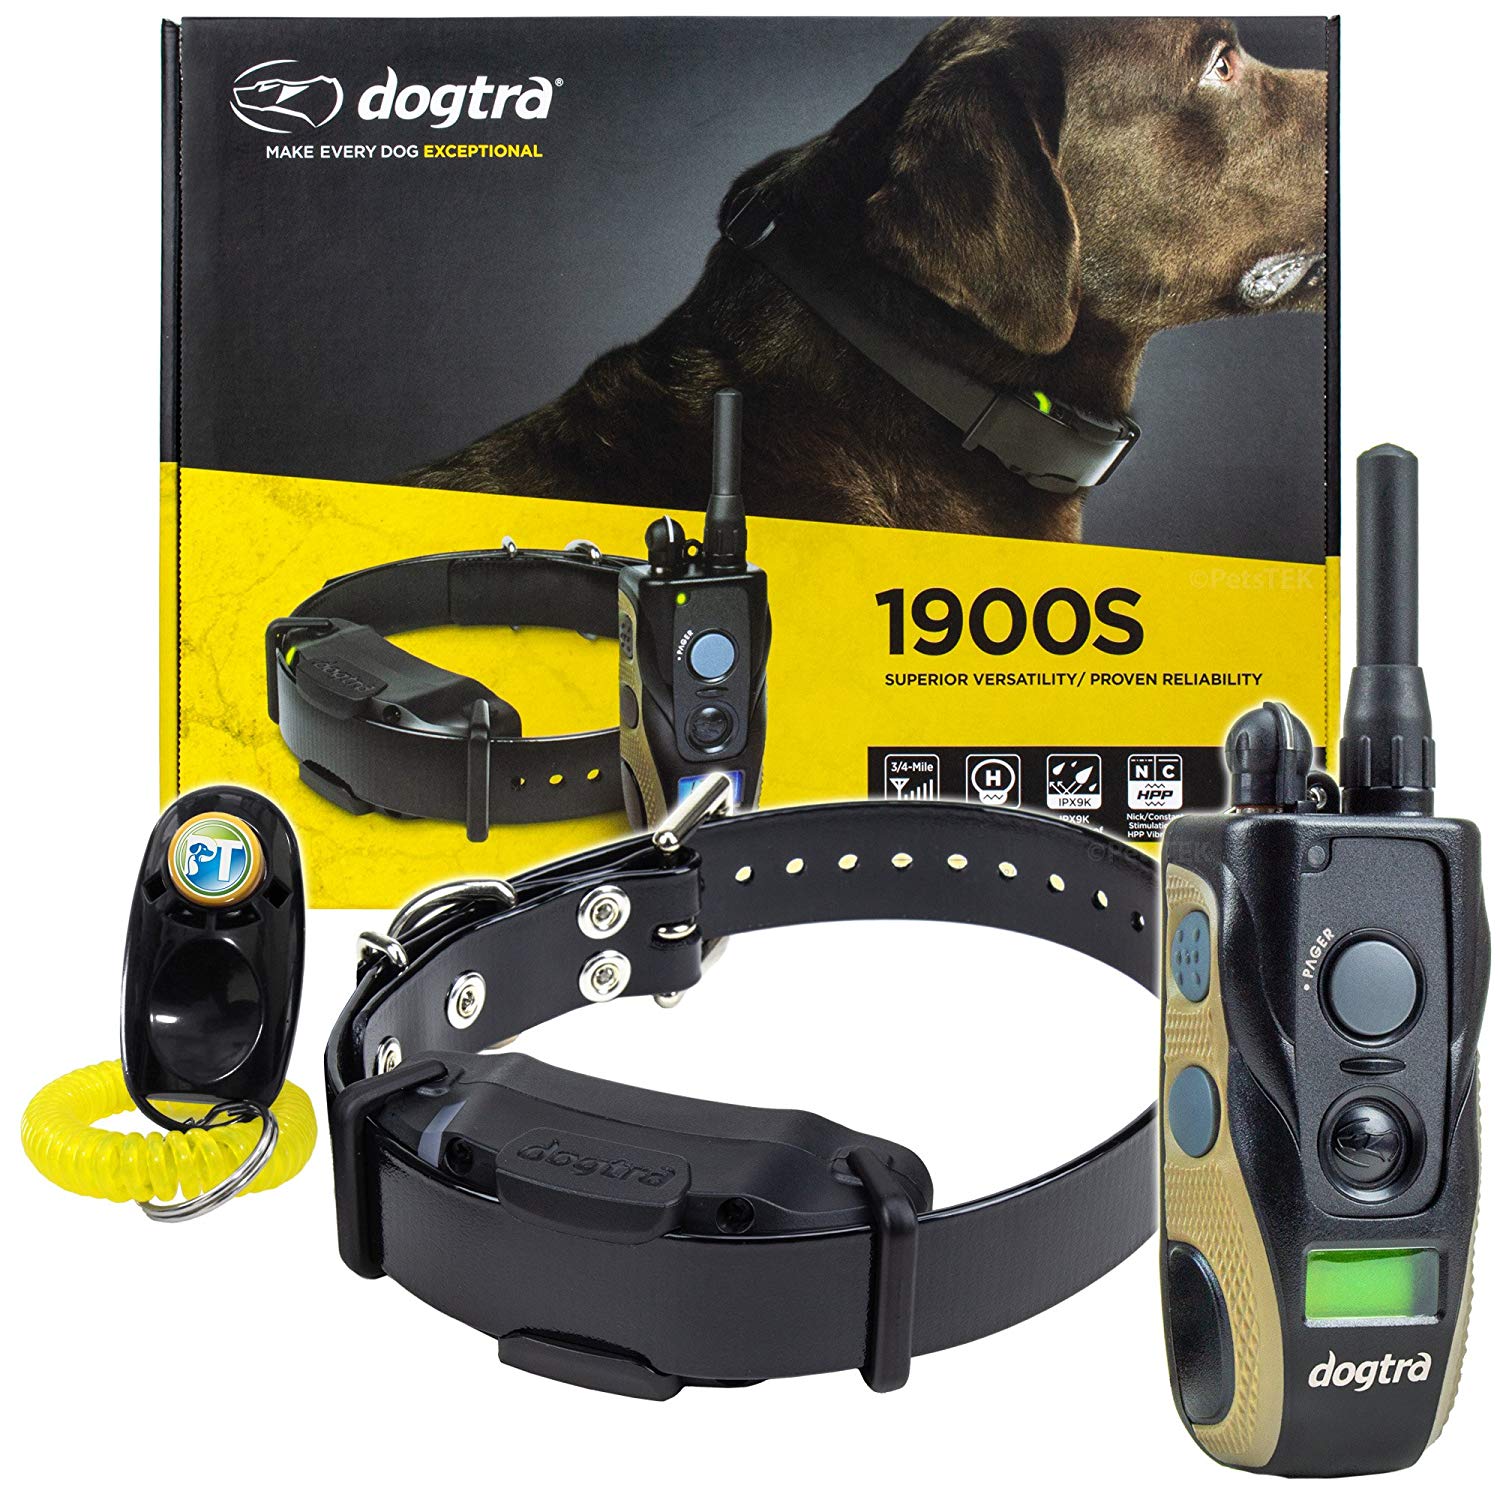 e collar training for aggressive dogs